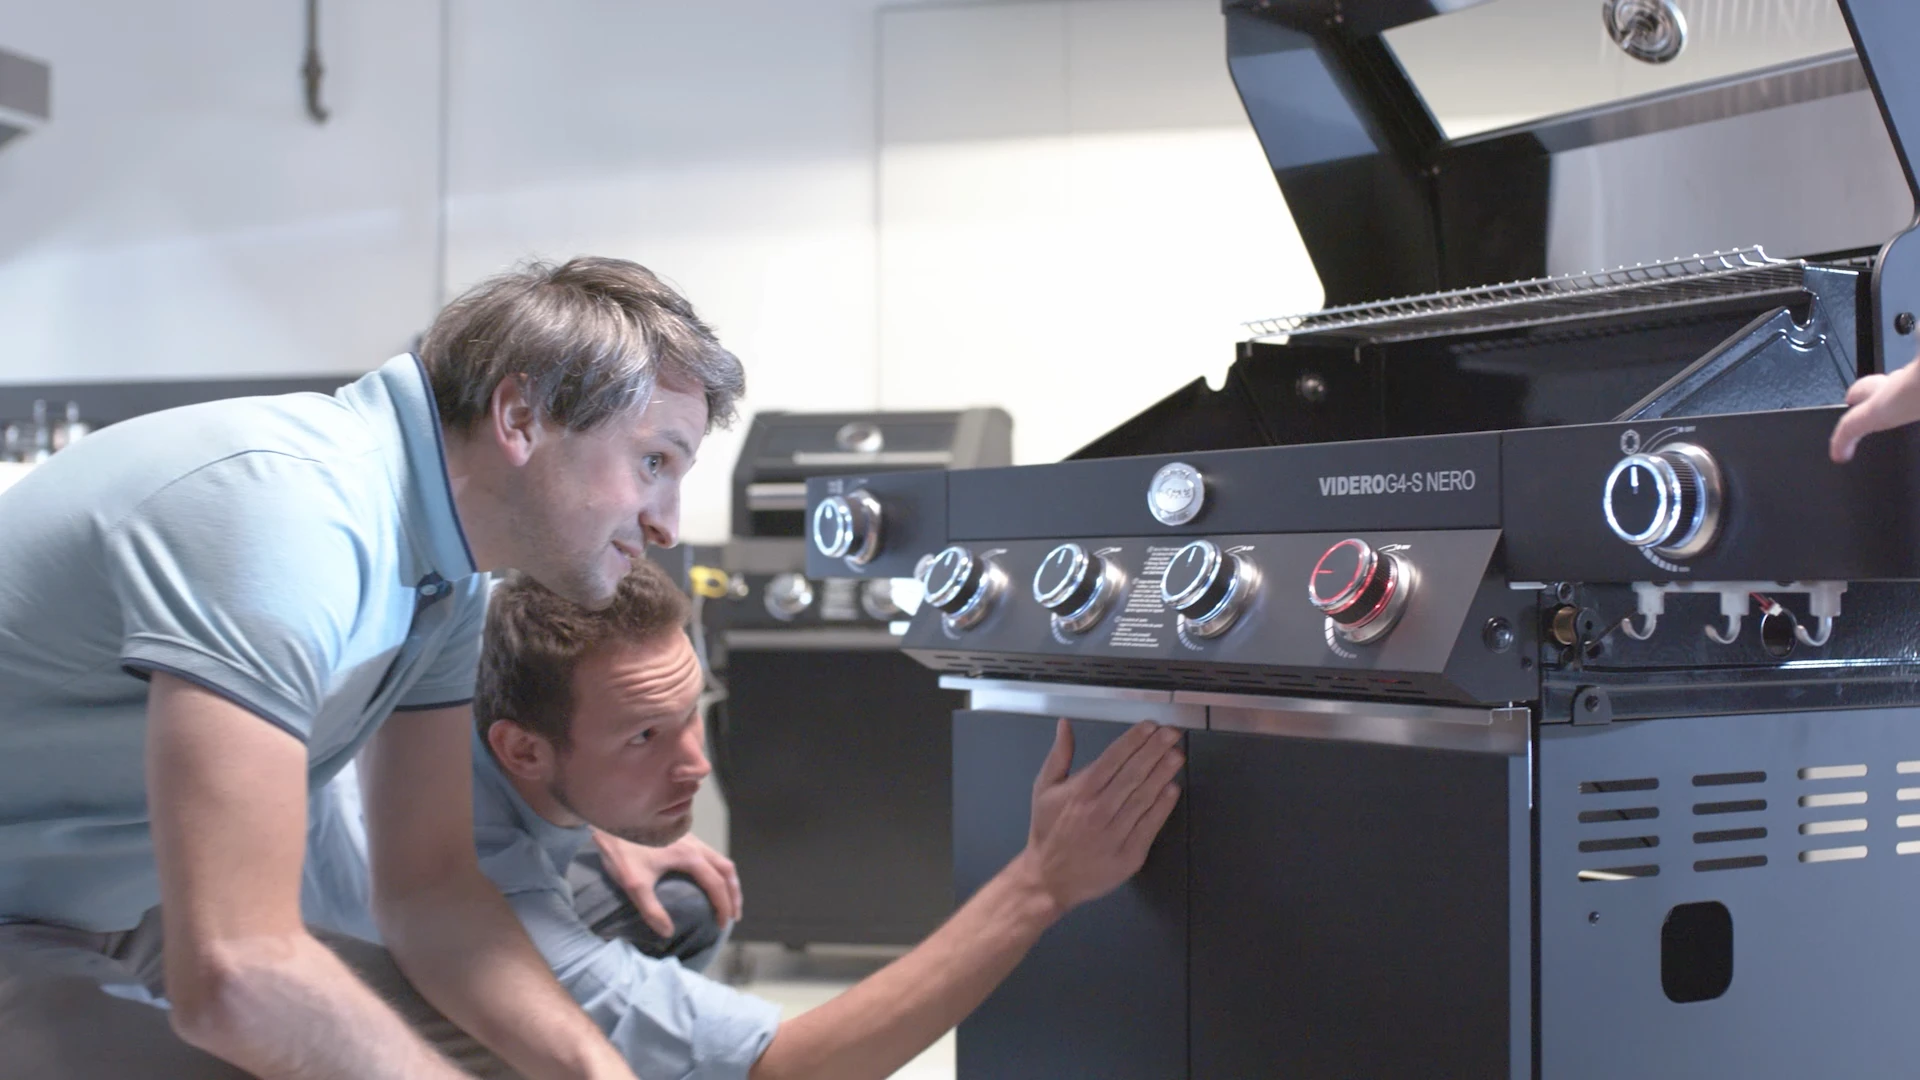 Zwei Männer inspizieren einen modernen Grill im Showroom, produziert von Bürobewegt – visuelles Marketing, 3D, Motion Design.